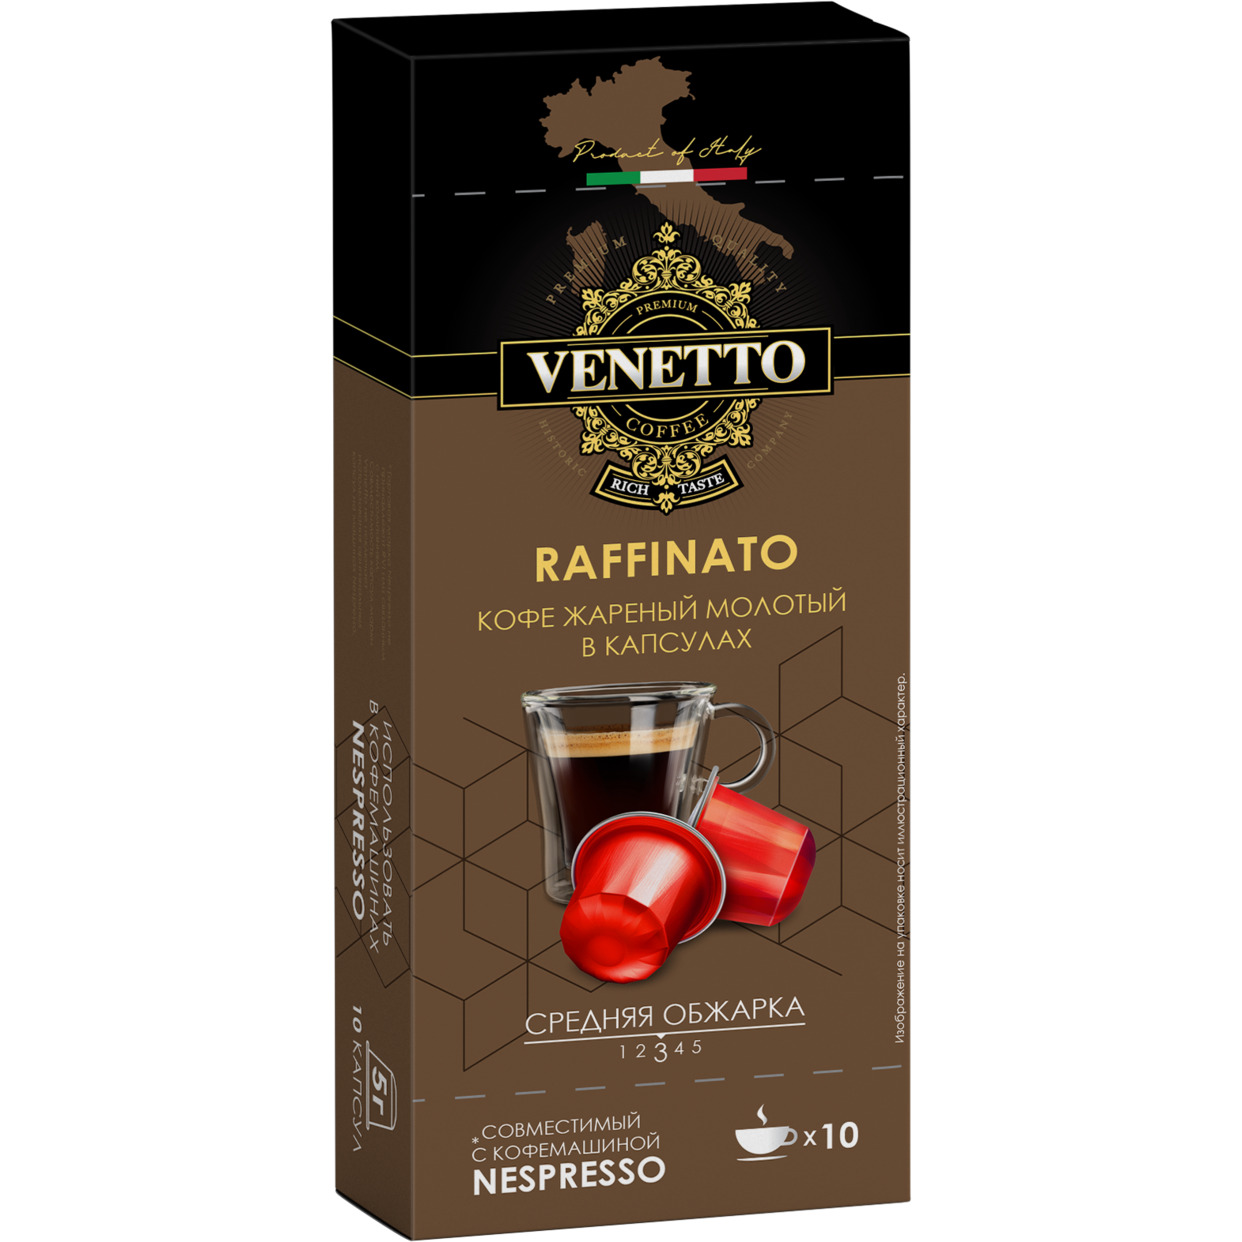 Кофе жареный молотый в капсулах RAFFINATO ТМ Venetto 50 г по акции в Пятерочке